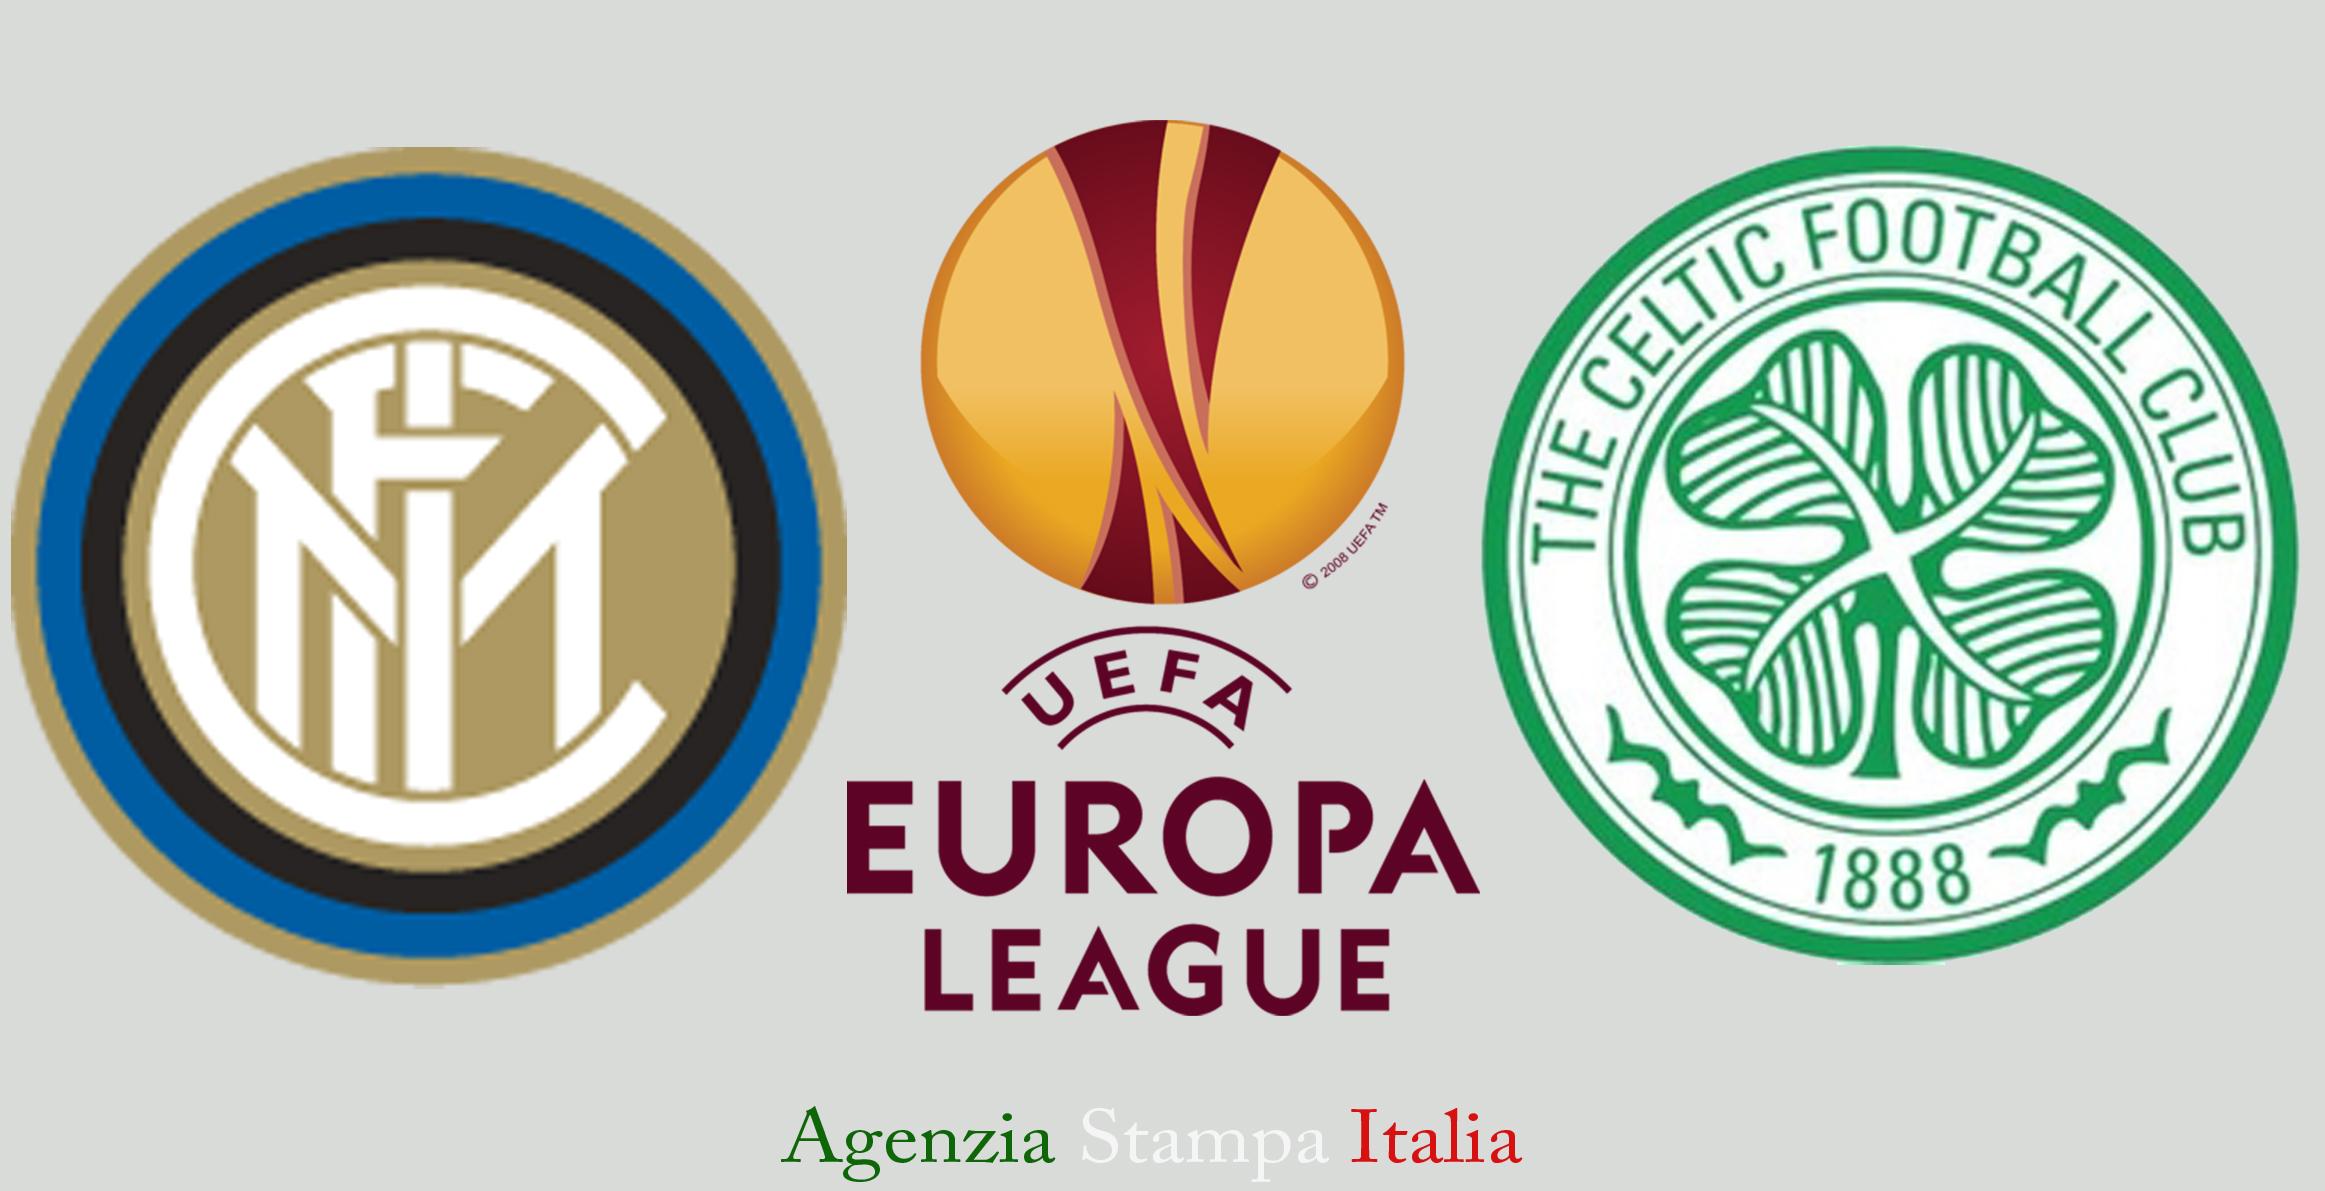 UEFA Europa League, Inter-Celtic 1-0 : Guarin regala il biglietto per gli ottavi di finale ai nerazzurri - cronaca e tabellino